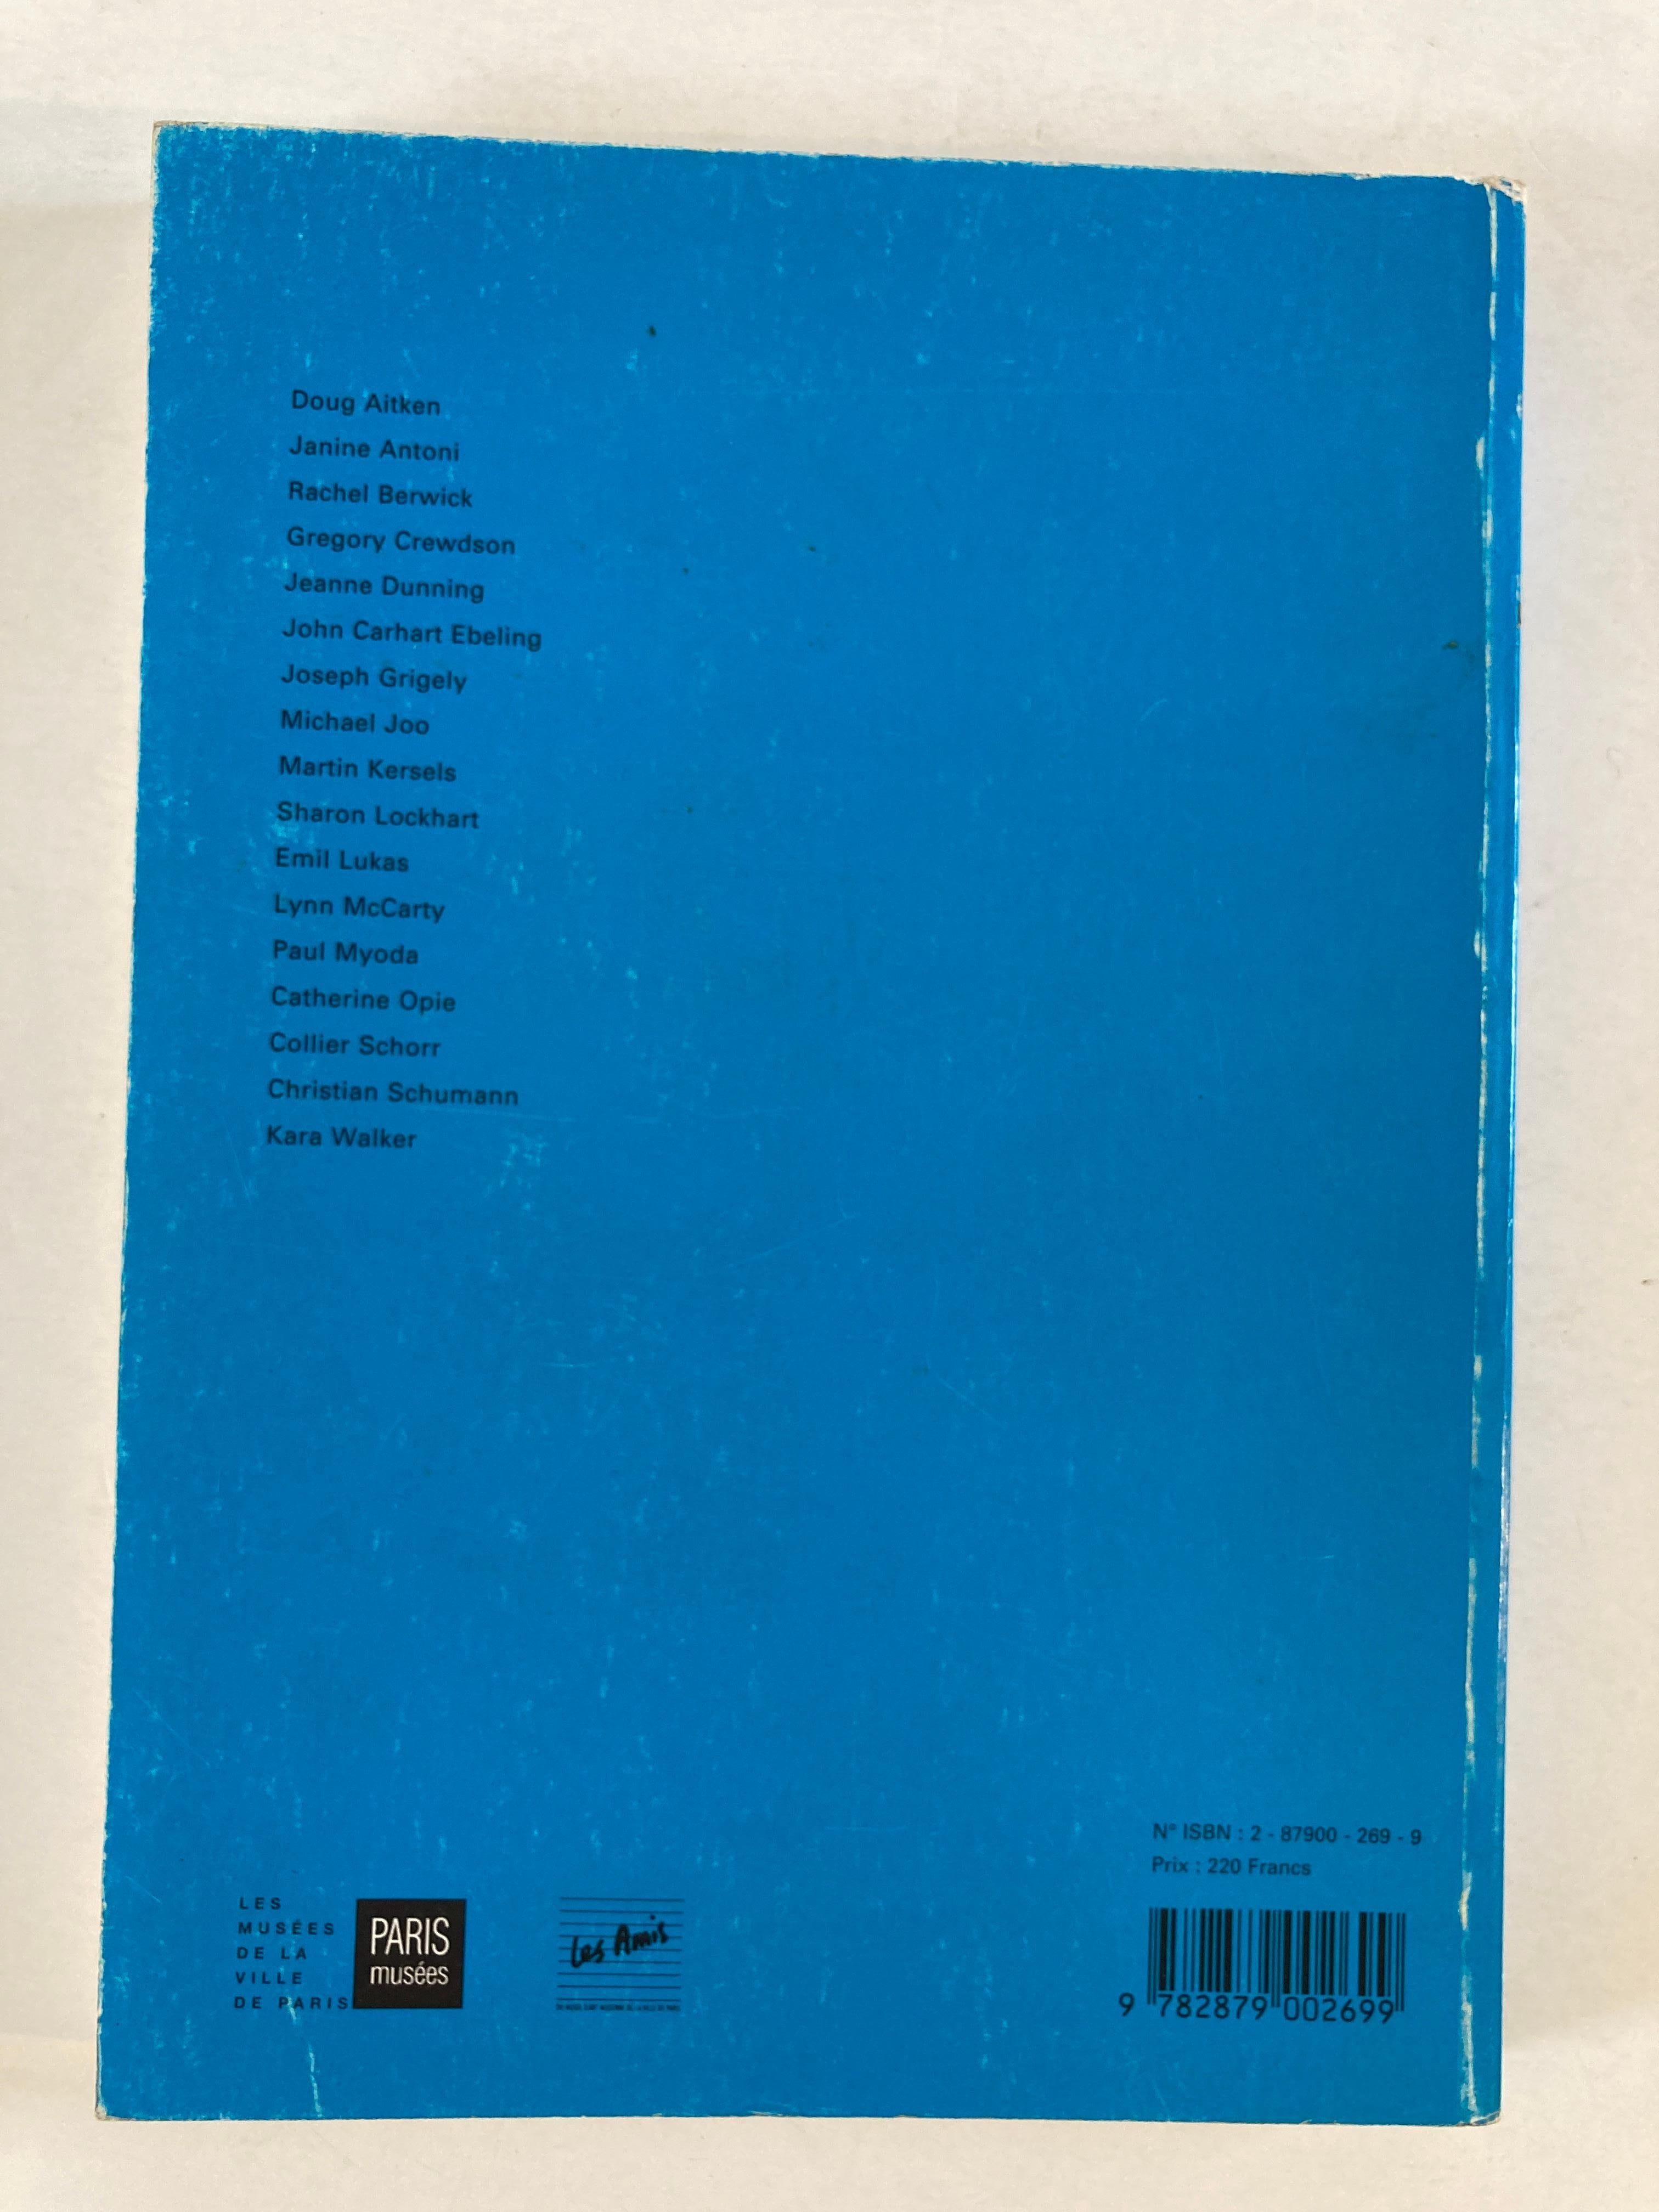 La belle et la be^te: Un choix de jeunes artistes americains : Beauty ad the Beast, a choice of young American artist.
Doug Aitken : 6 octobre-19 novembre 1995, Muse´e d'art moderne de la ville de Paris (PARIS MUSEES) Paperback – January 1,